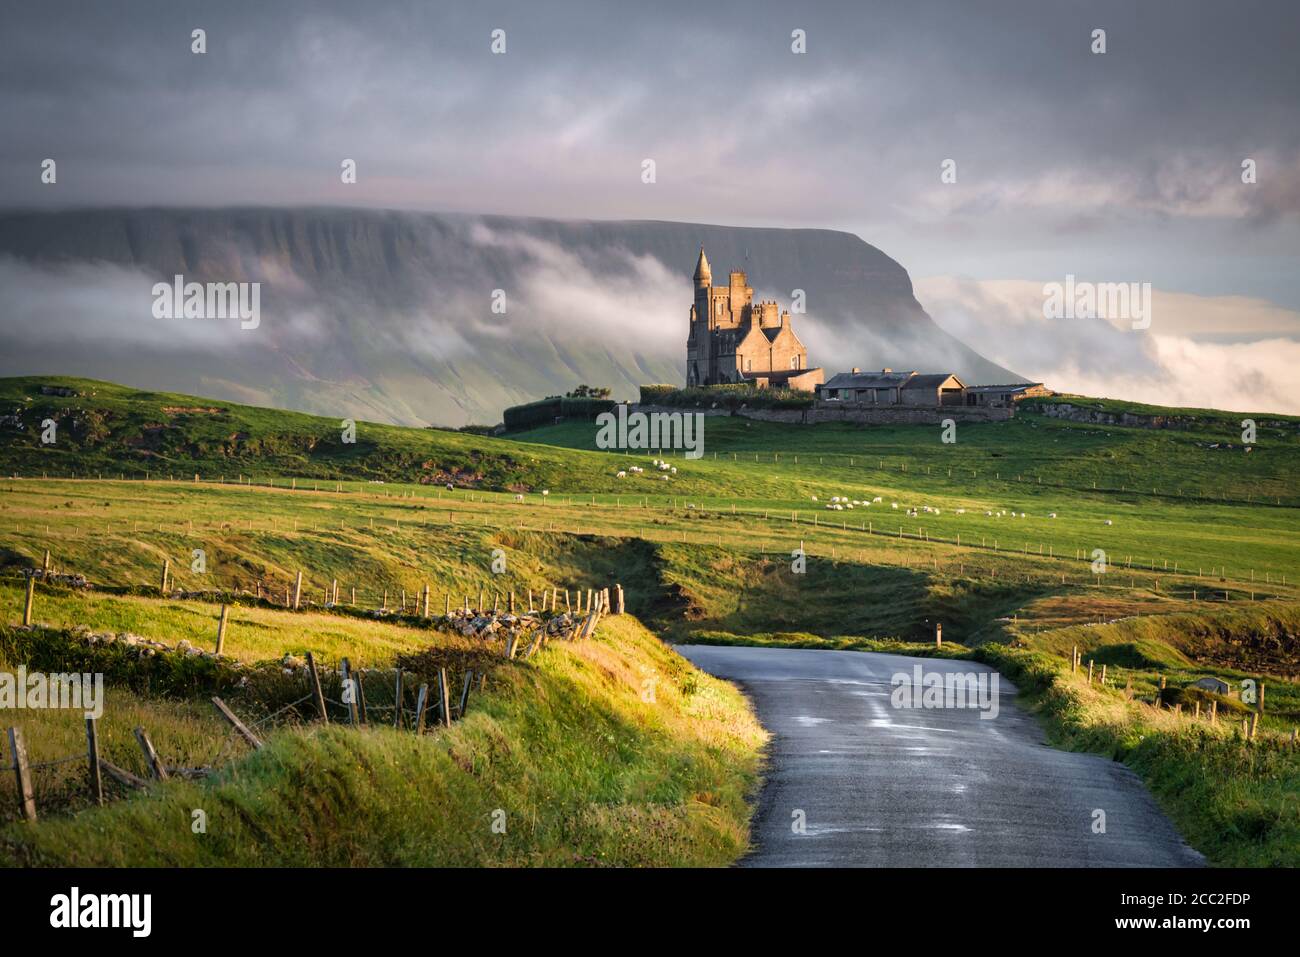 Mullaghmore, Irland-Jul 31, 2020: Classiebawn Castle in Mullaghmore County Sligo Irland Stockfoto